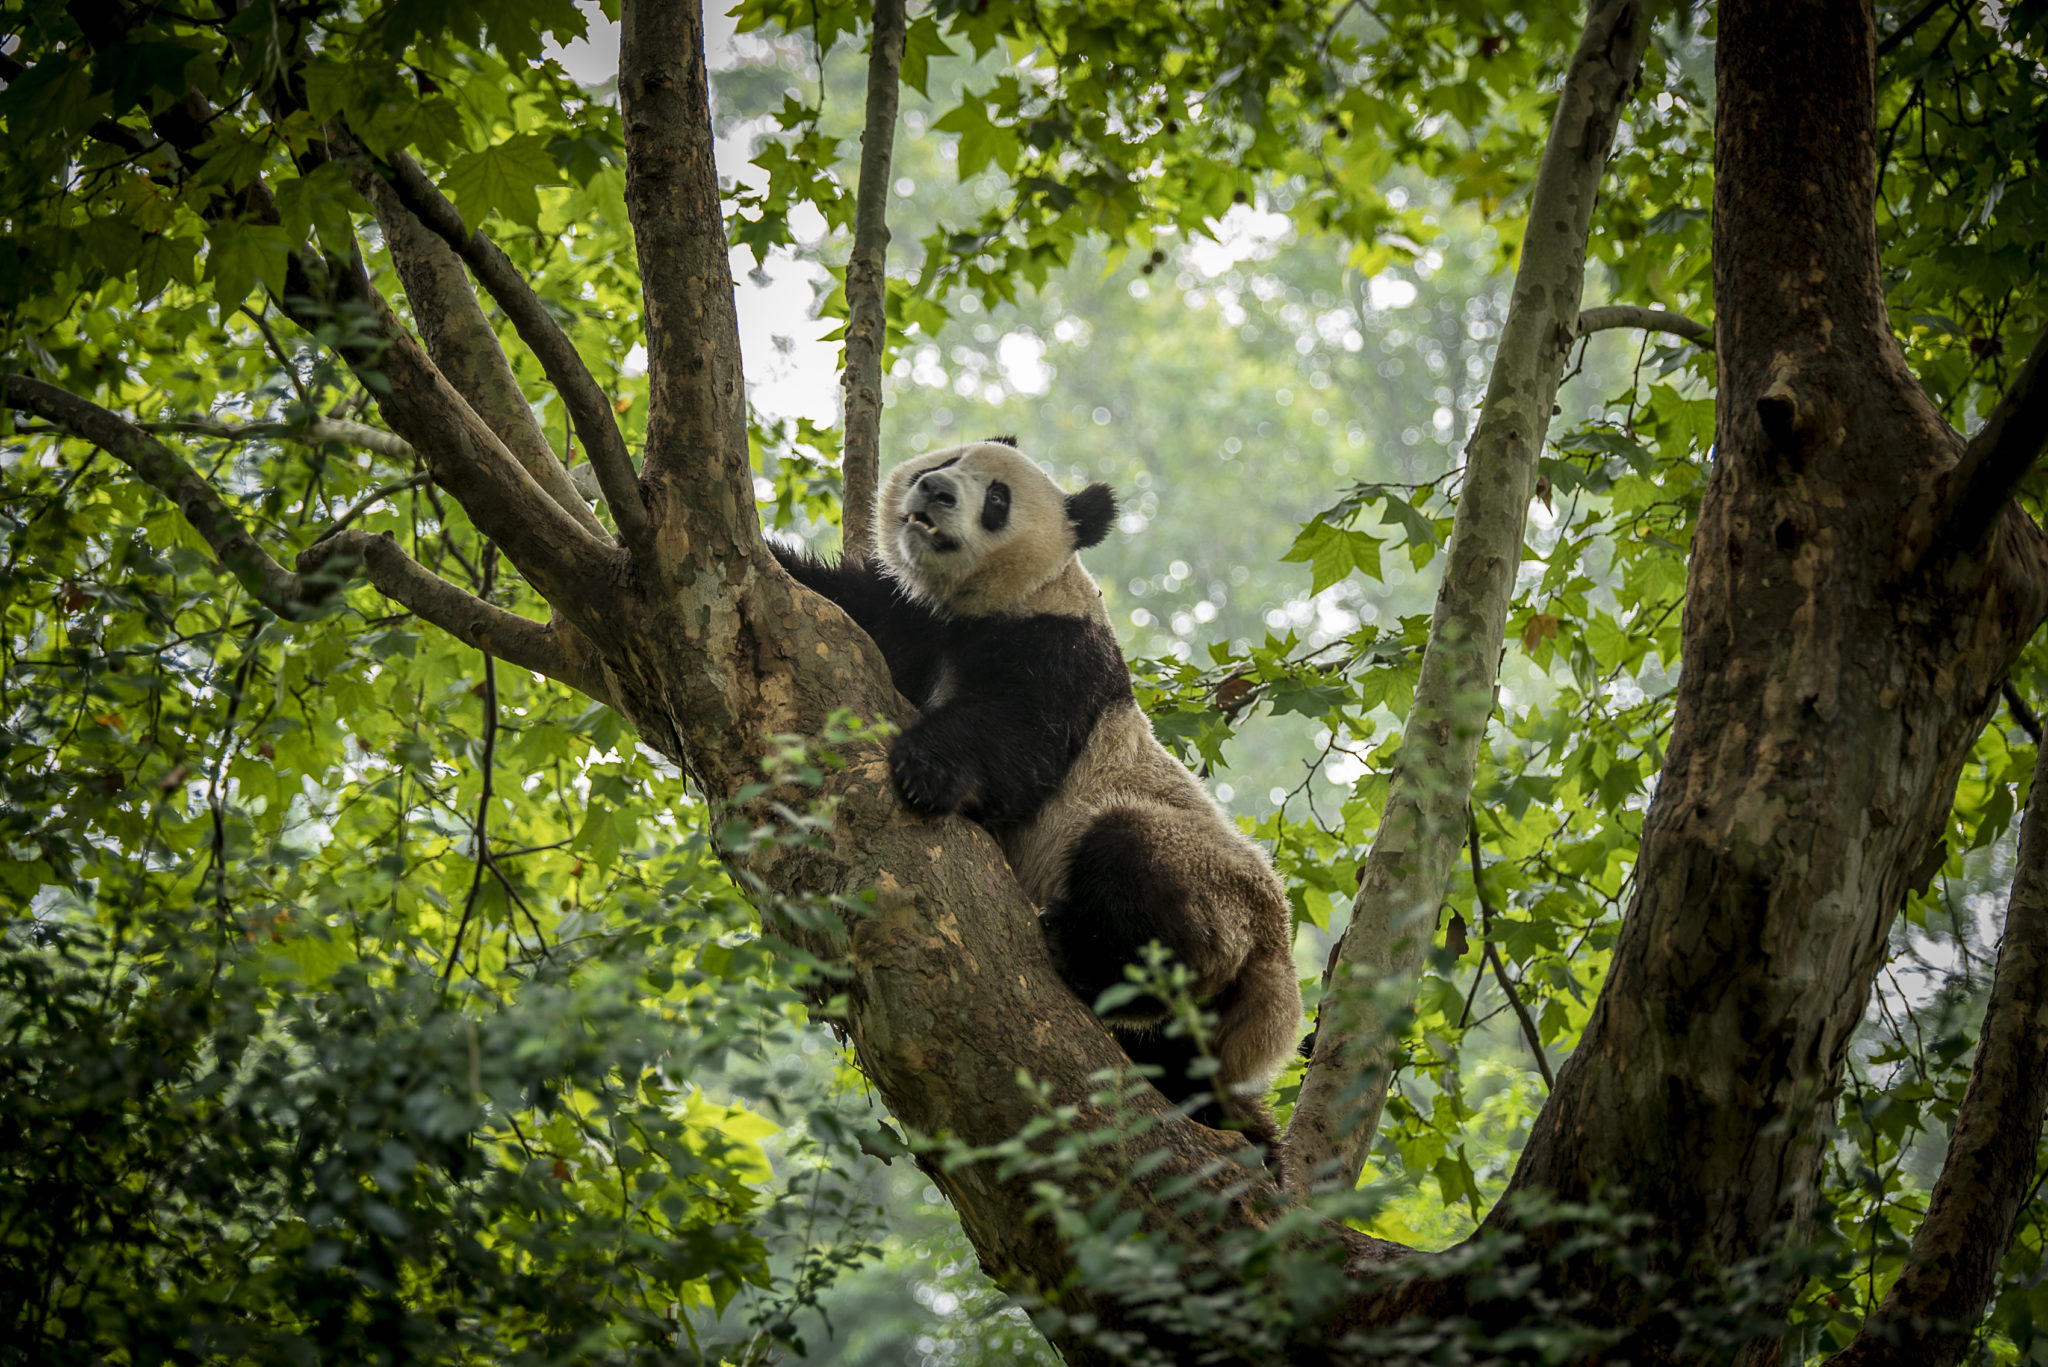 The Panda – China